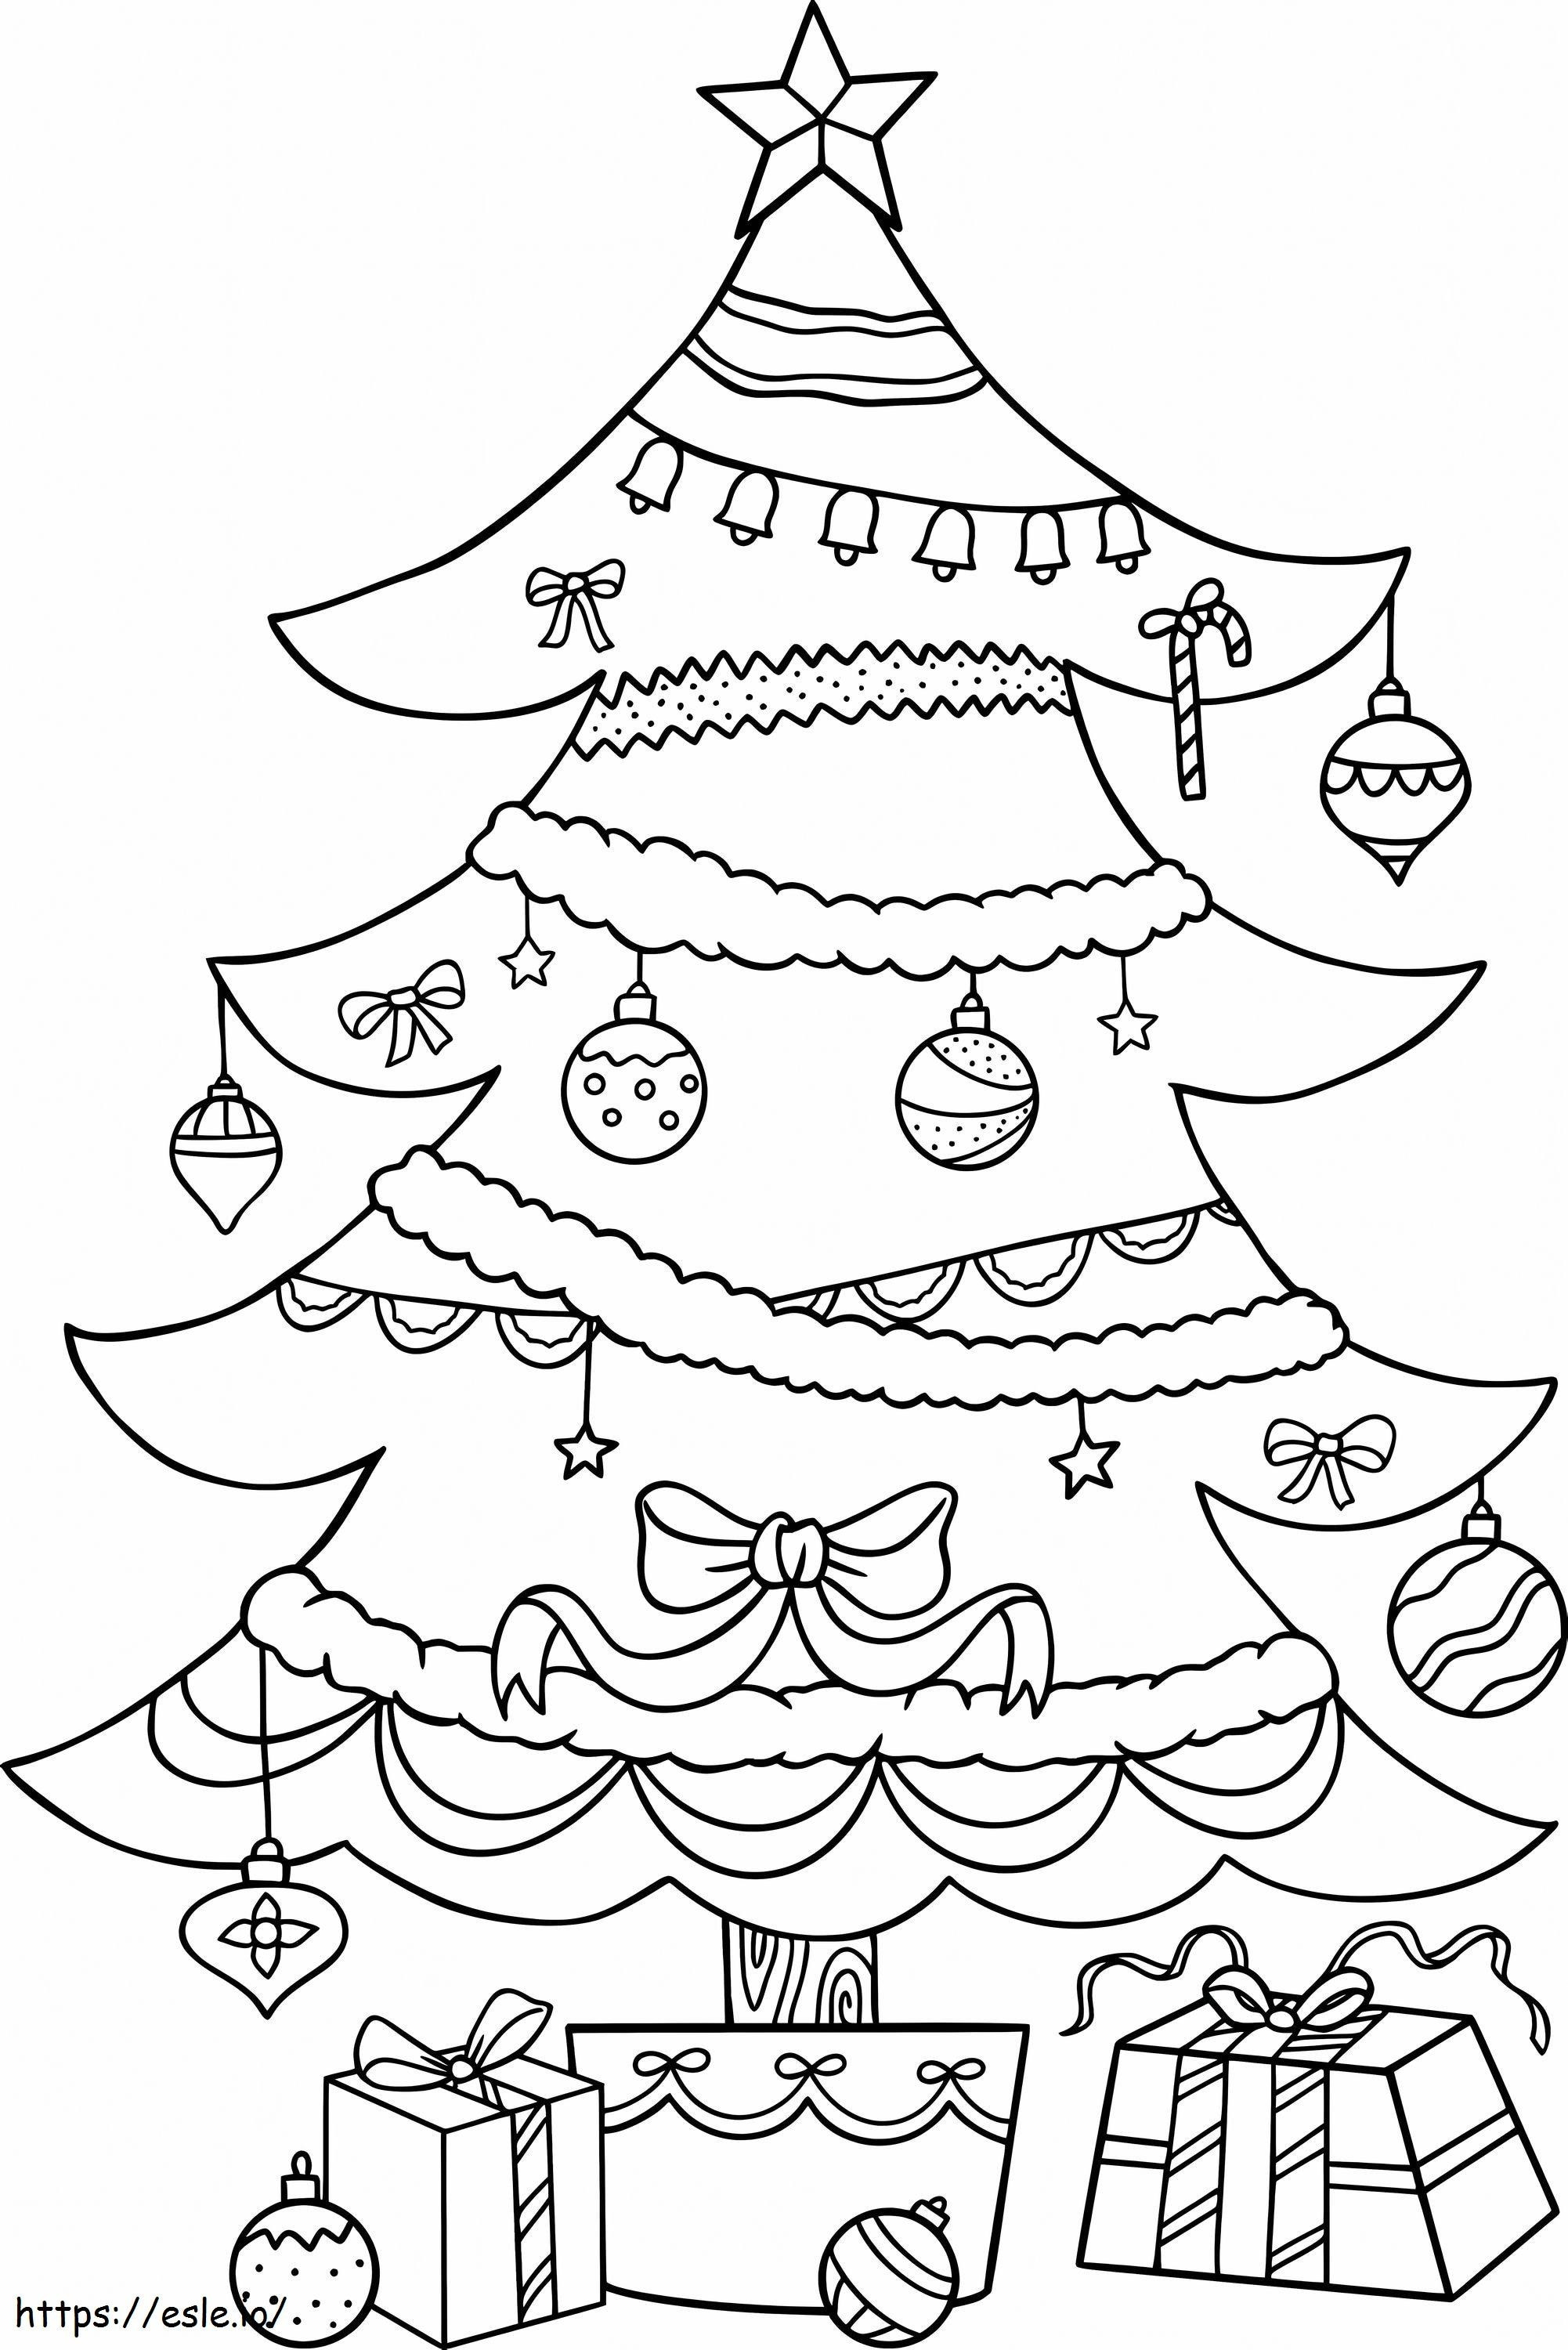 Coloriage Incroyable arbre de Noël à imprimer dessin